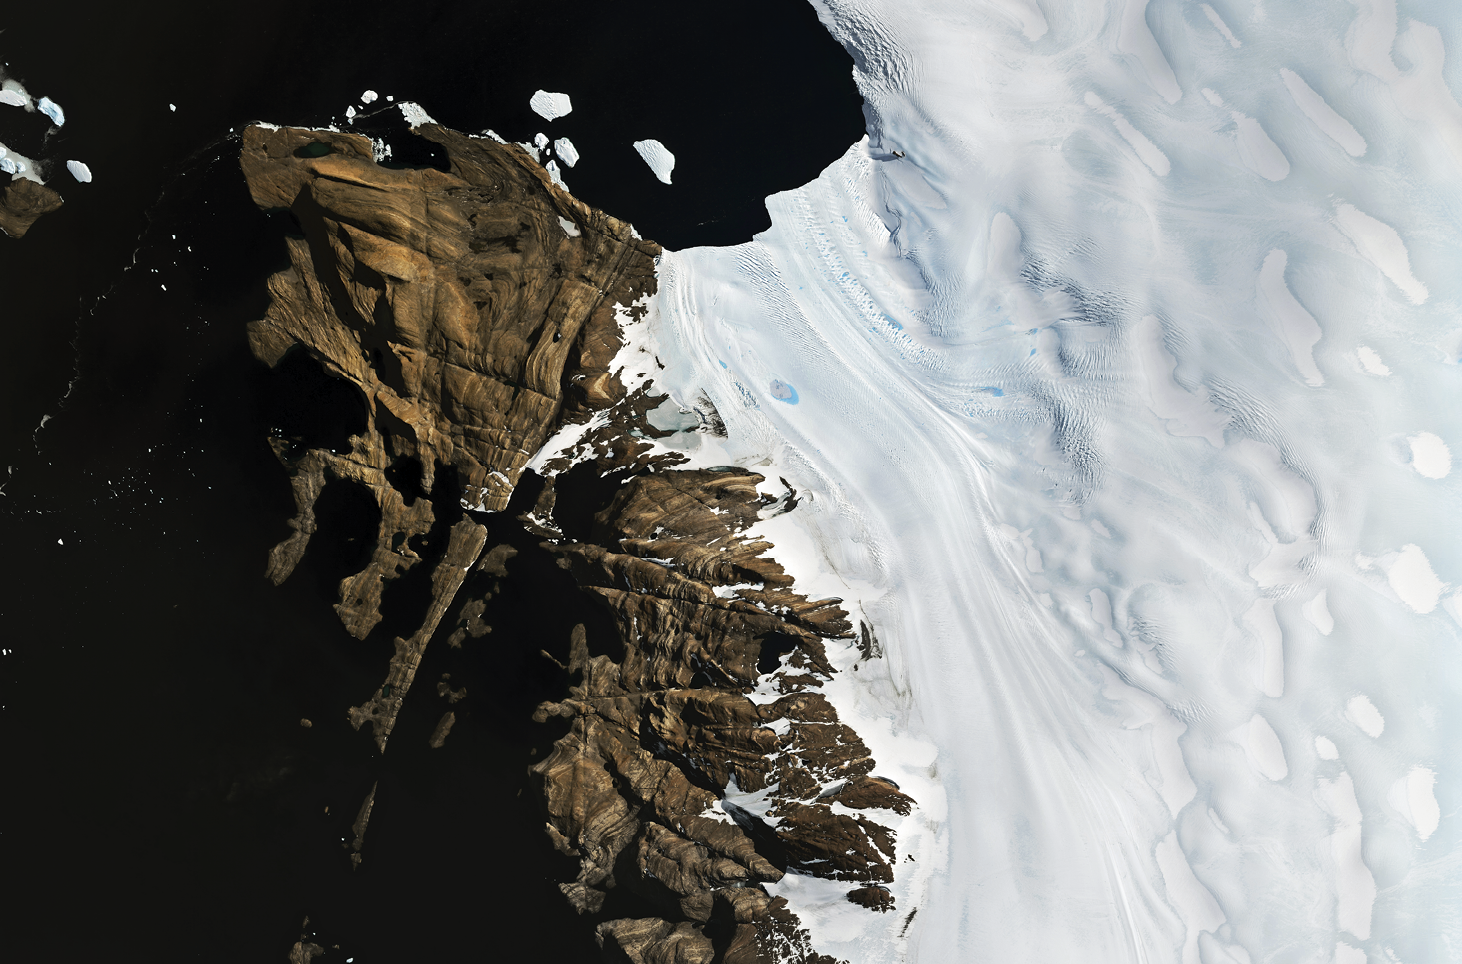 Imagem de satélite. 
Imagem de satélite destacando, à direita, uma grande área coberta de gelo, com uma linha de arrasto de gelo em direção ao mar. À esquerda, rochas expostas sem cobertura vegetal e glacial. Na parte superior esquerda, mar escuro com algumas placs de gelo.